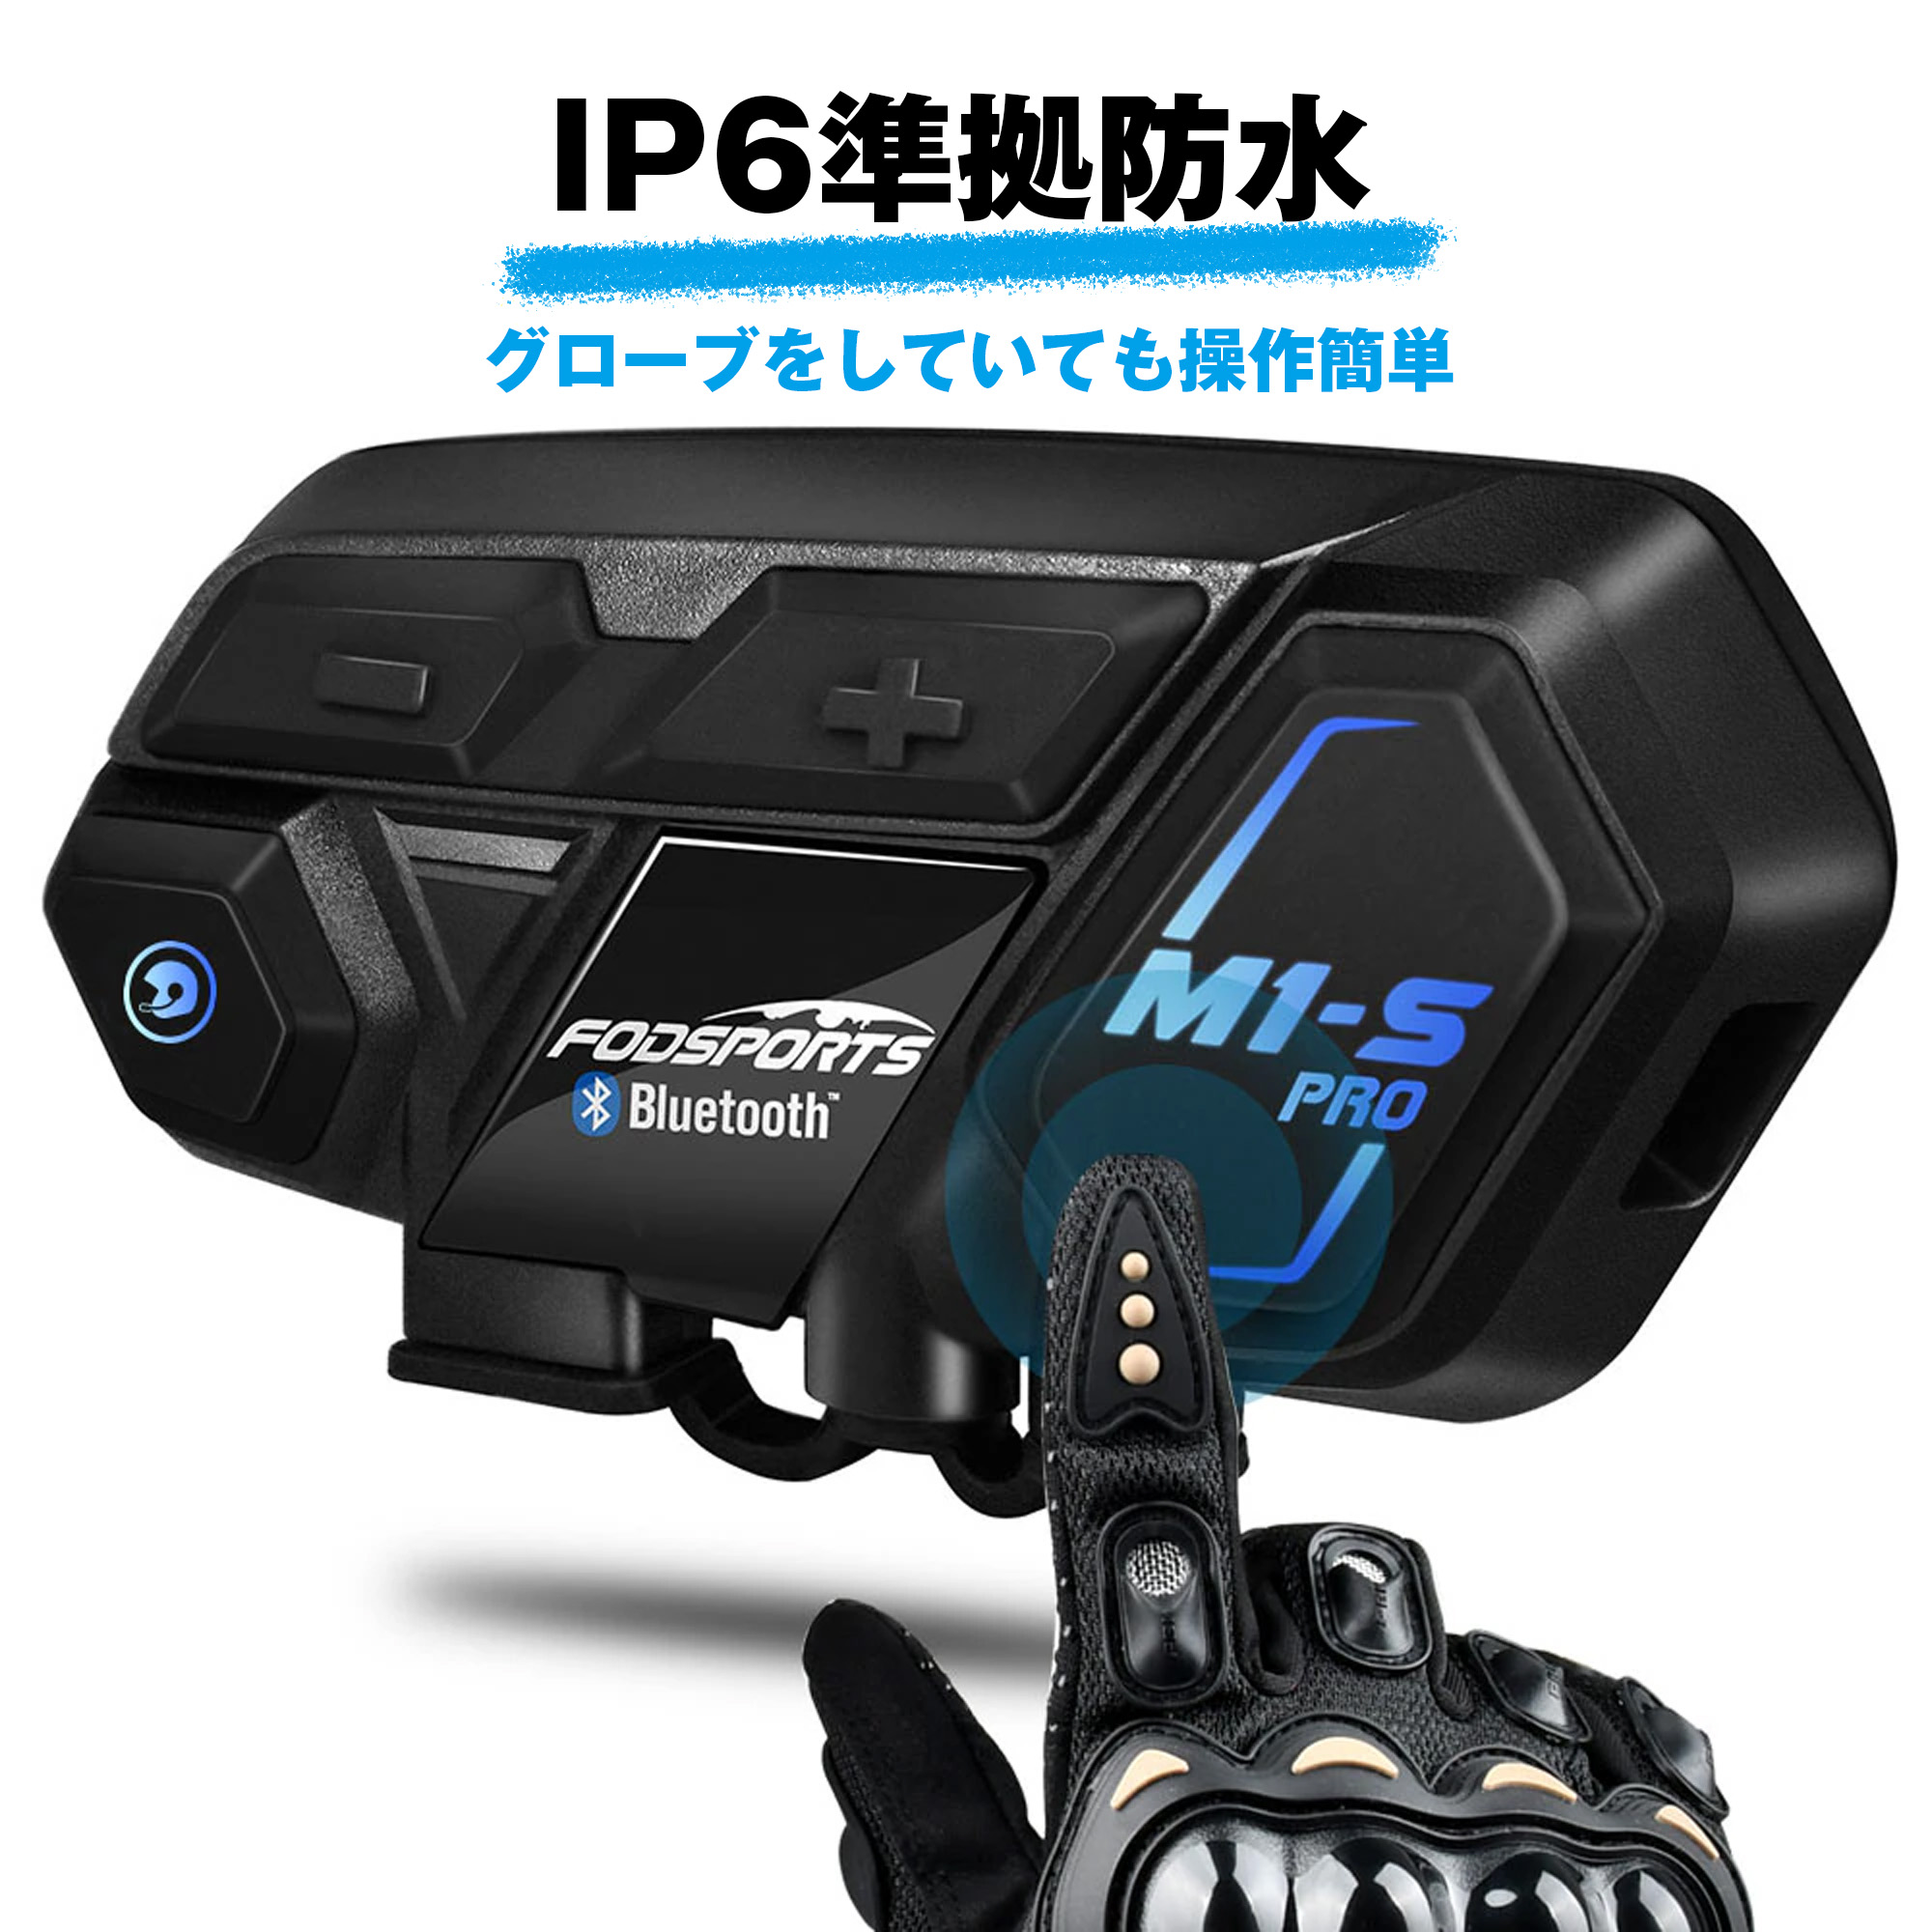 バイク インカム 正規品 FODSPORTS M1-S Pro 最大8人同時通話 Bluetooth5.0搭載 メーカー保証1年付 日本語音声案内  日本語説明書